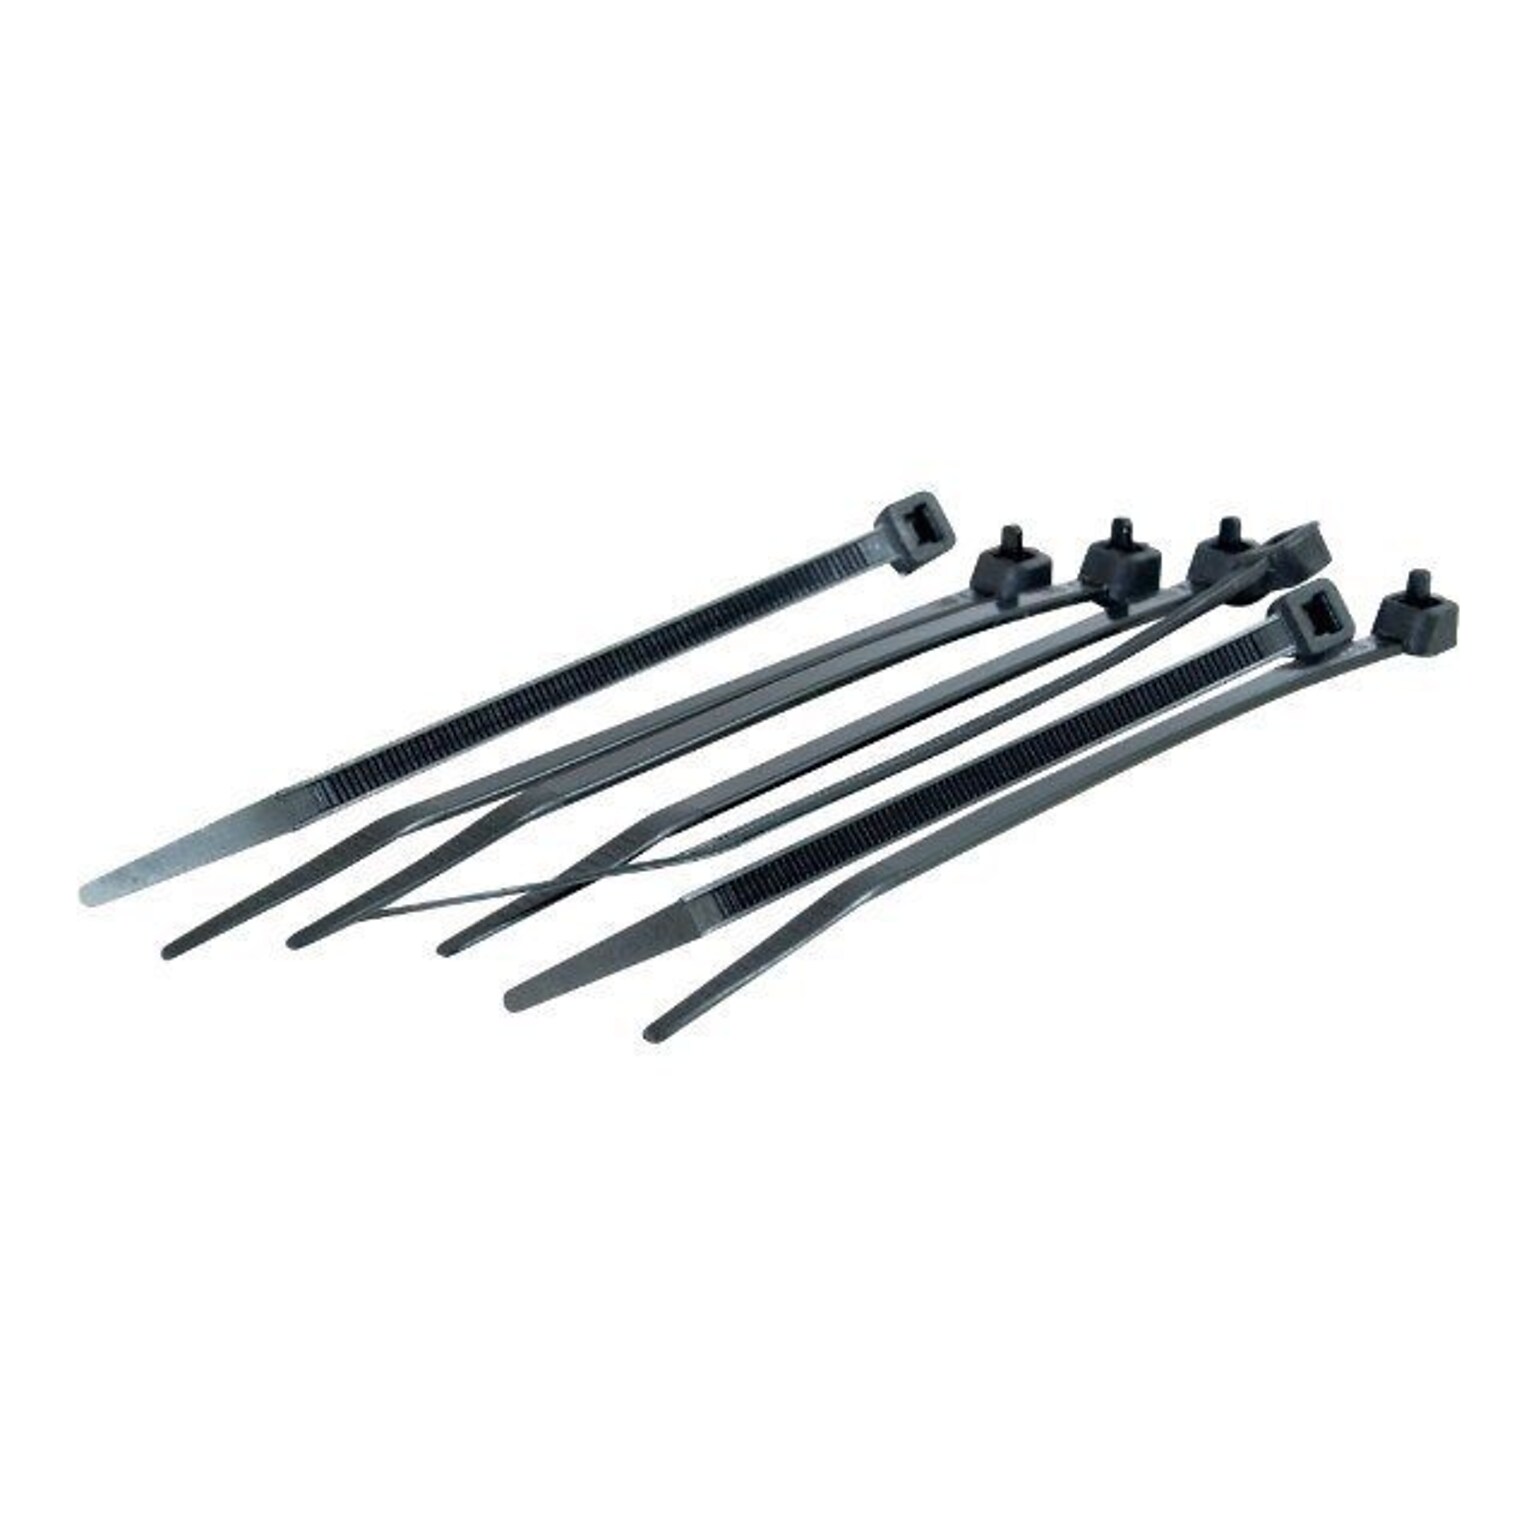 C2G ® Releasable/Reusable Cable Tie; 11 1/2, Black (43223)